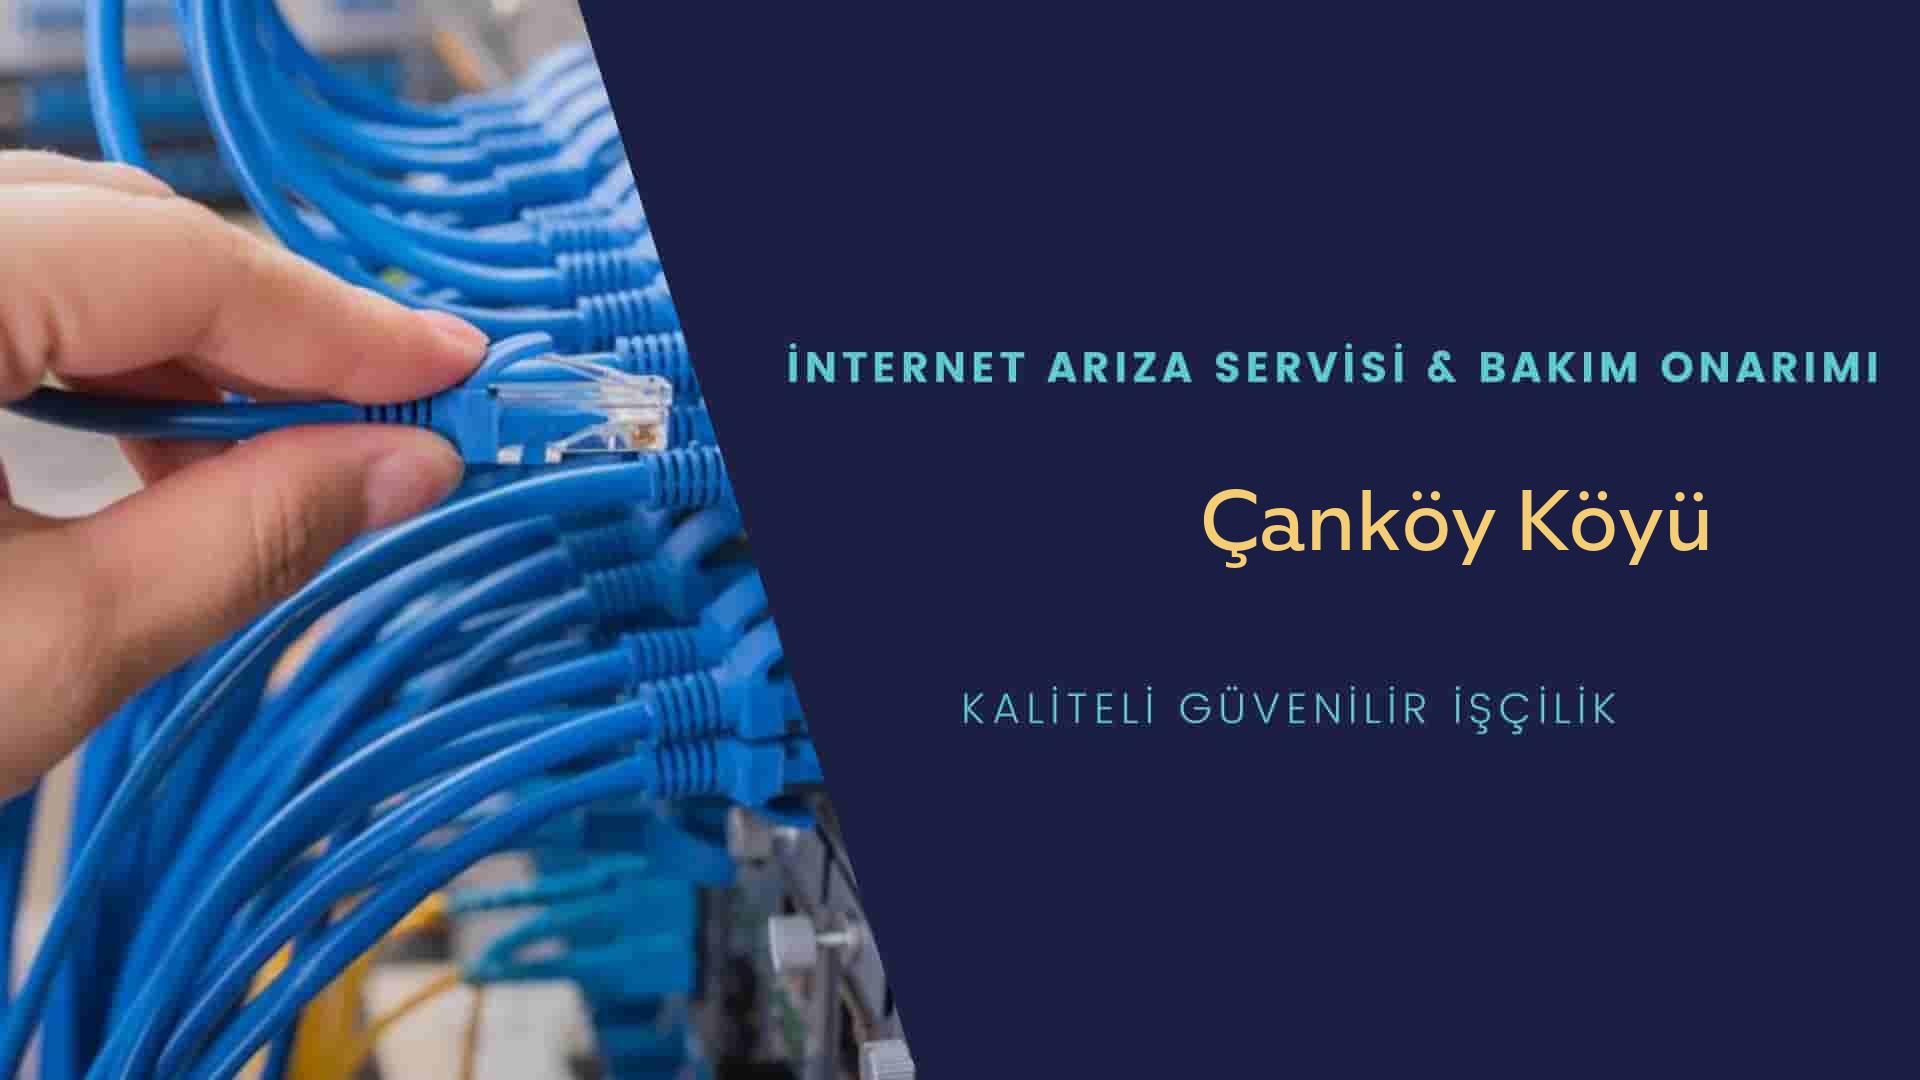 Çanköy Köyü internet kablosu çekimi yapan yerler veya elektrikçiler mi? arıyorsunuz doğru yerdesiniz o zaman sizlere 7/24 yardımcı olacak profesyonel ustalarımız bir telefon kadar yakındır size.